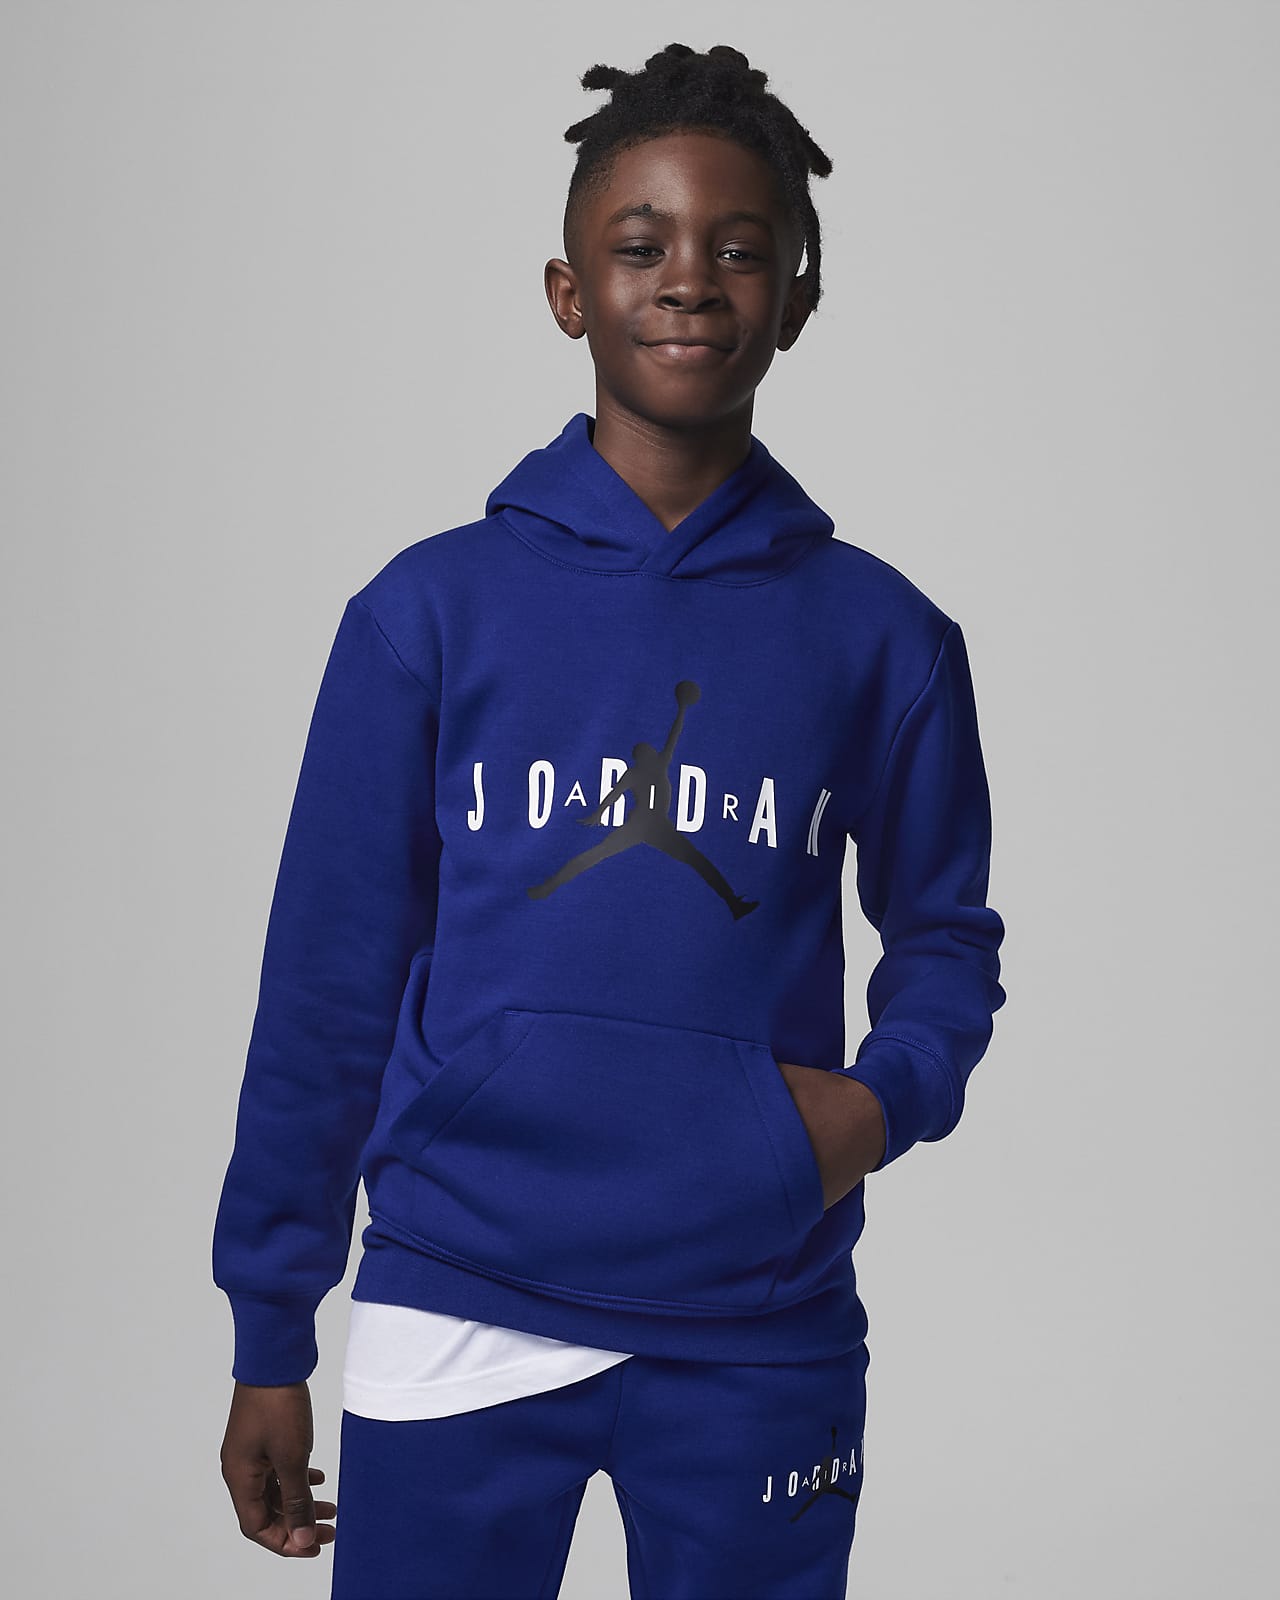 Μπλούζα με κουκούλα Jordan για μεγάλα παιδιά